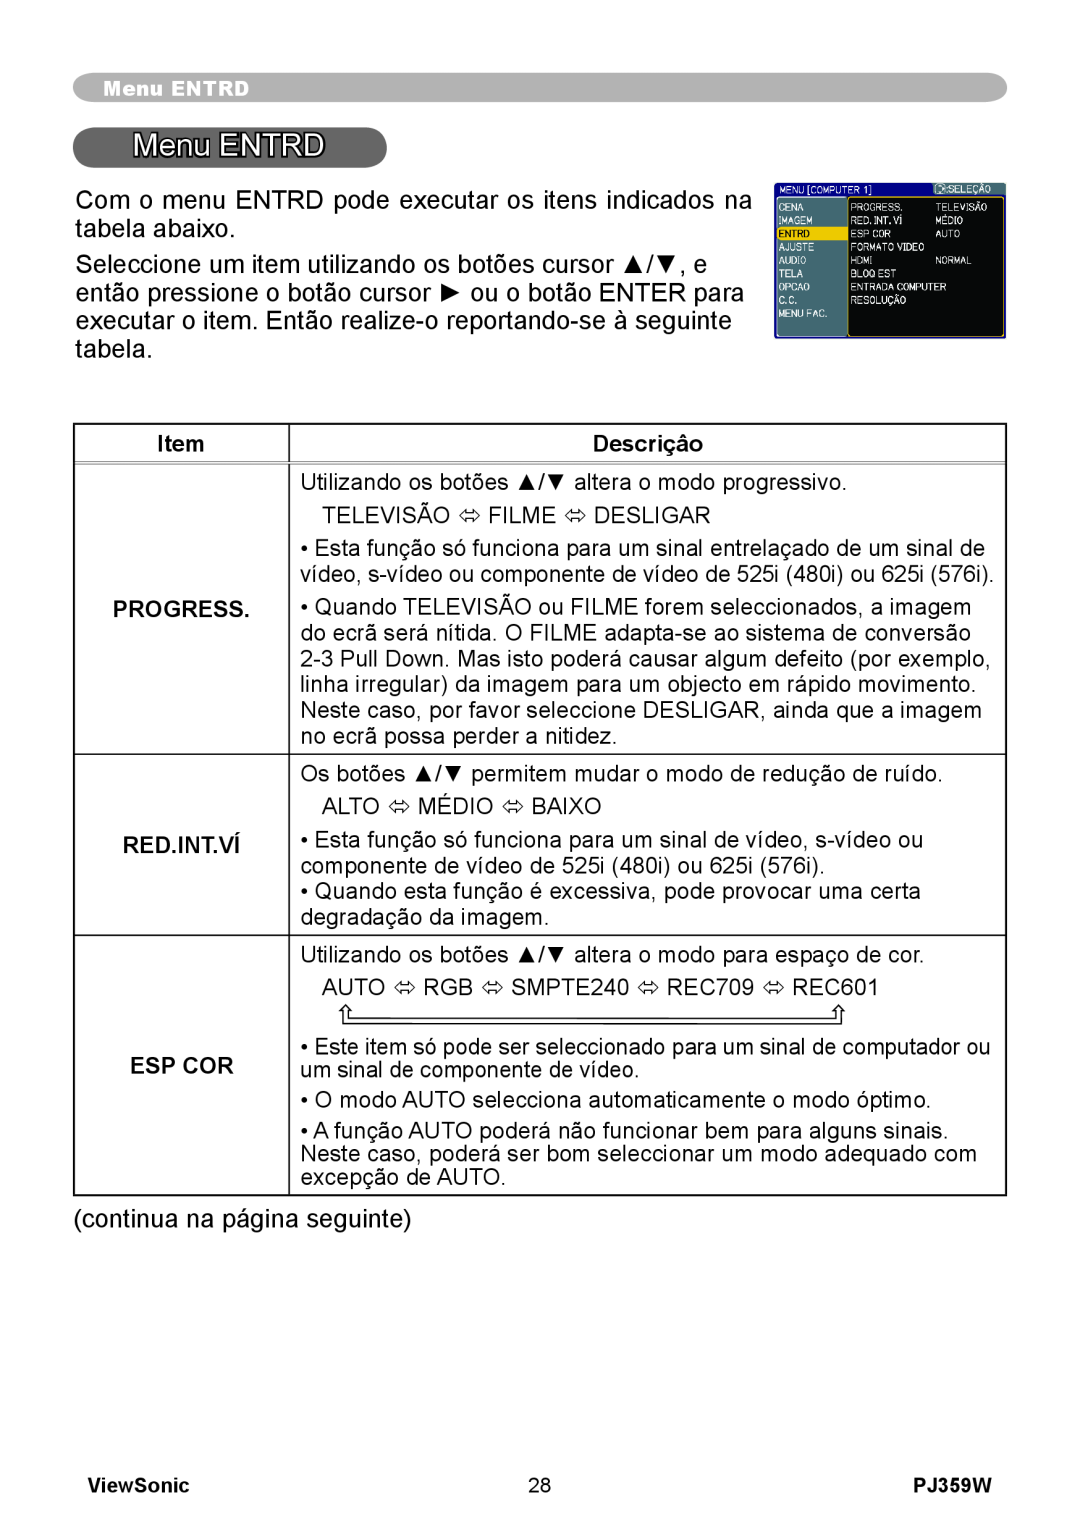 ViewSonic PJ359 manual Menu ENTRD, Descriçâo, Progress, Red.Int.Ví, Esp Cor 